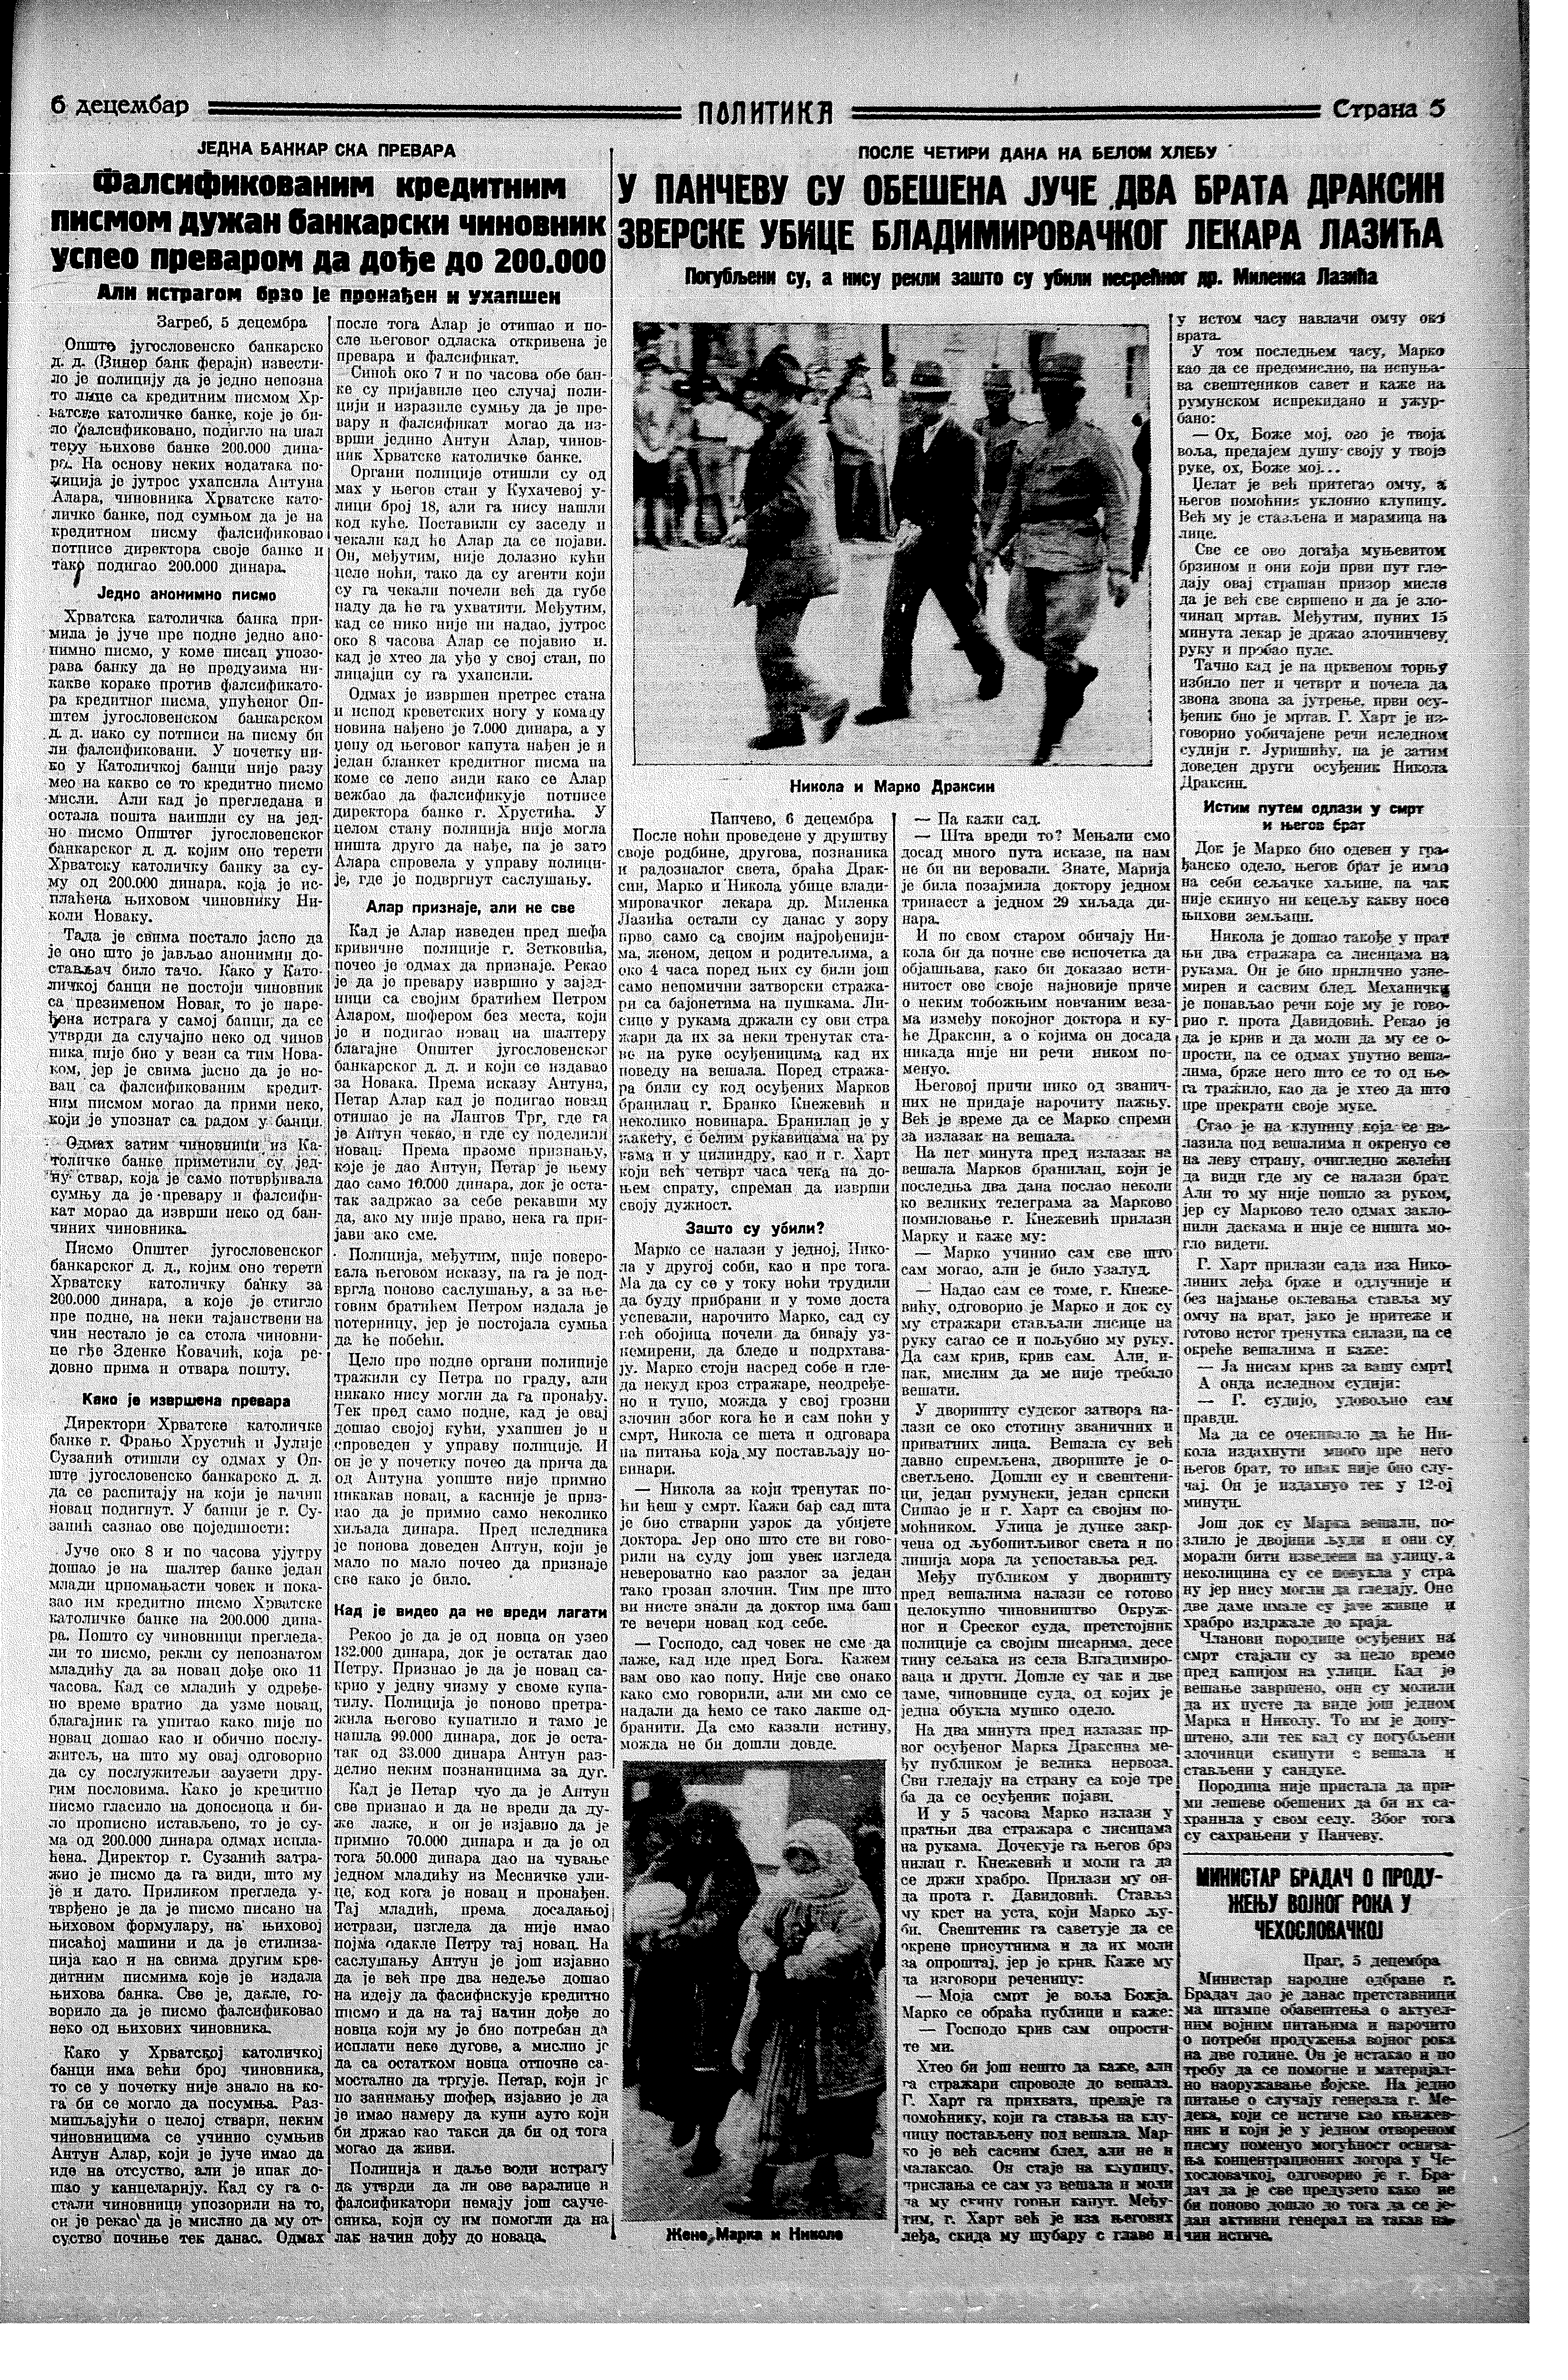 Obešena dva brata, Politika, 06.12.1934.